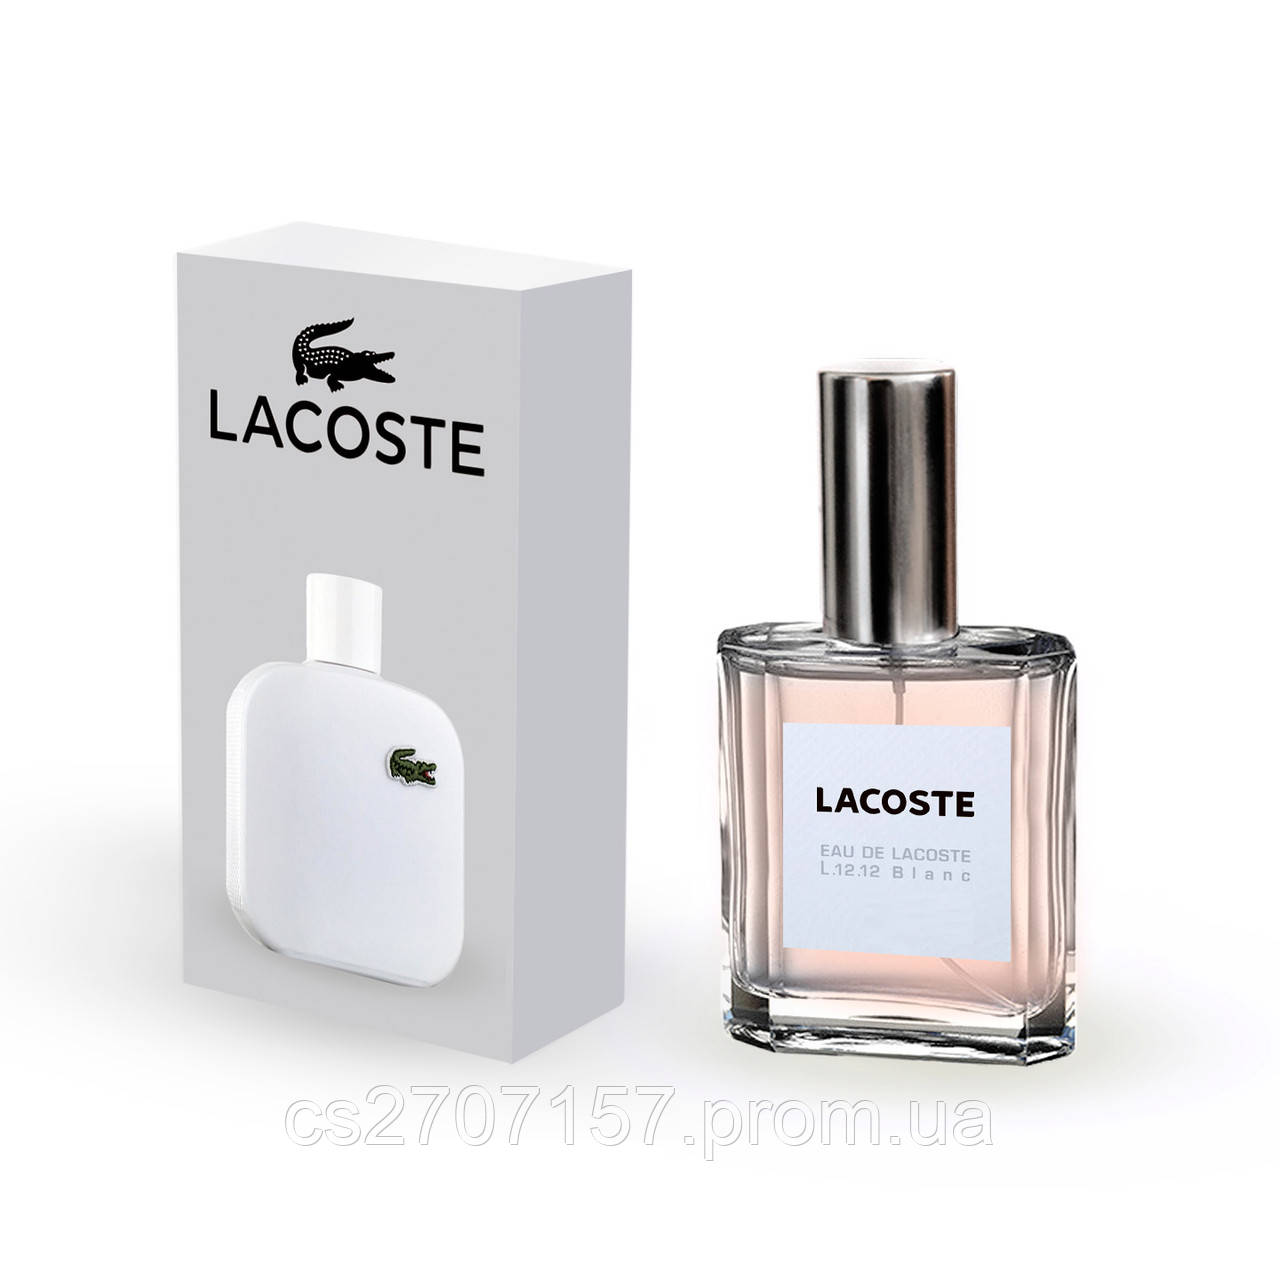 Чоловічий міні парфуми Lacoste Eau De L. 12.12 Blanc 35 мл